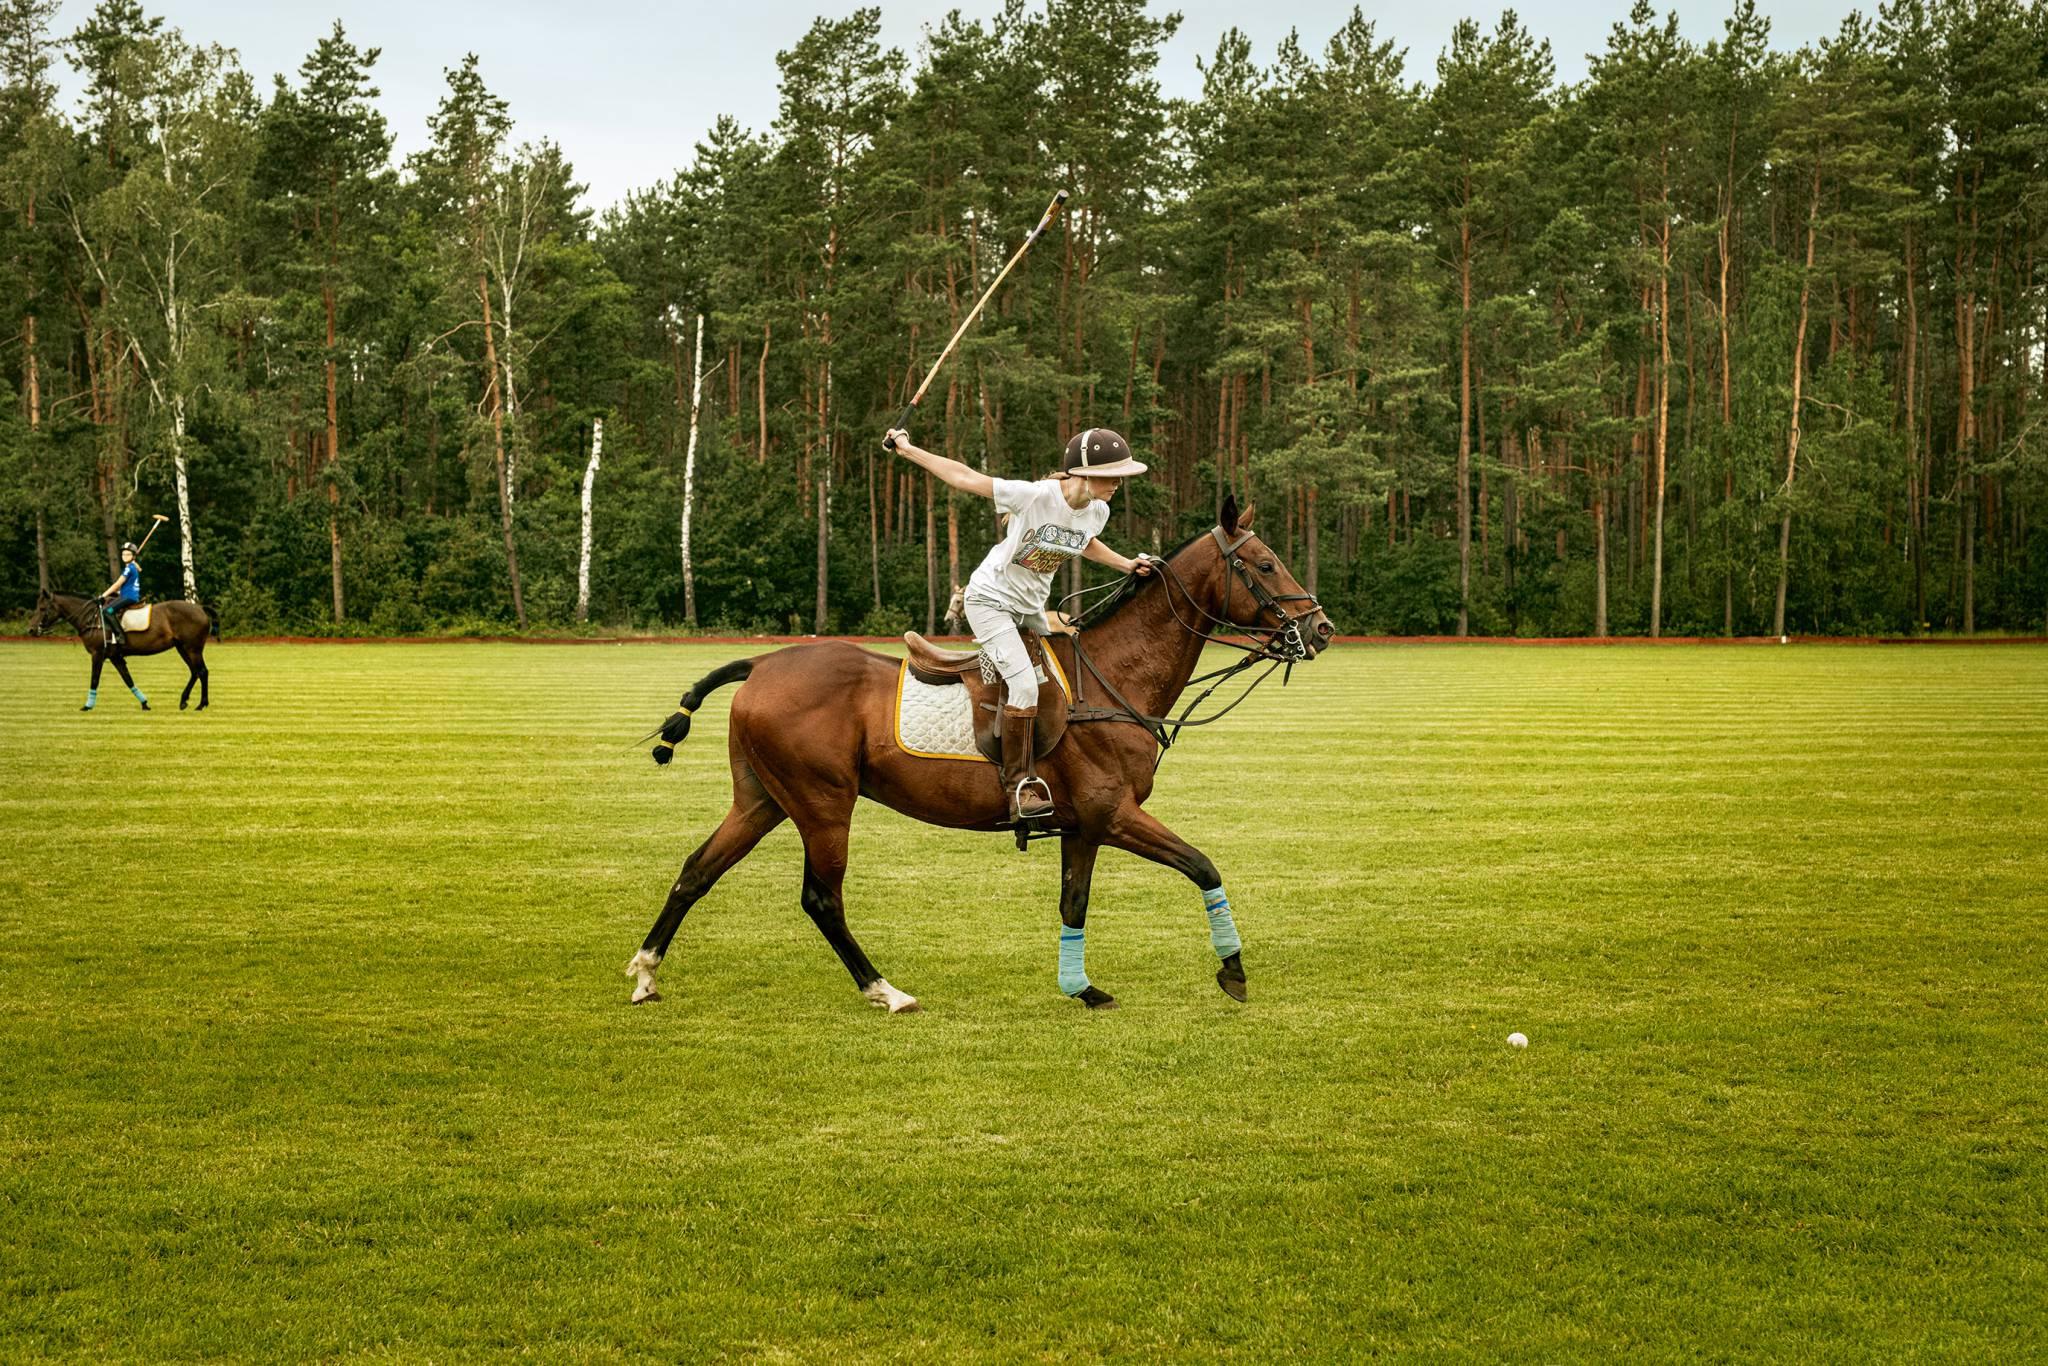  Tak się gra w polo: Maja Olbrych (siostra Maćka) w pięknym full swingu uderza piłkę. (Fot. Adam Słaboń/The Dreams Studio)